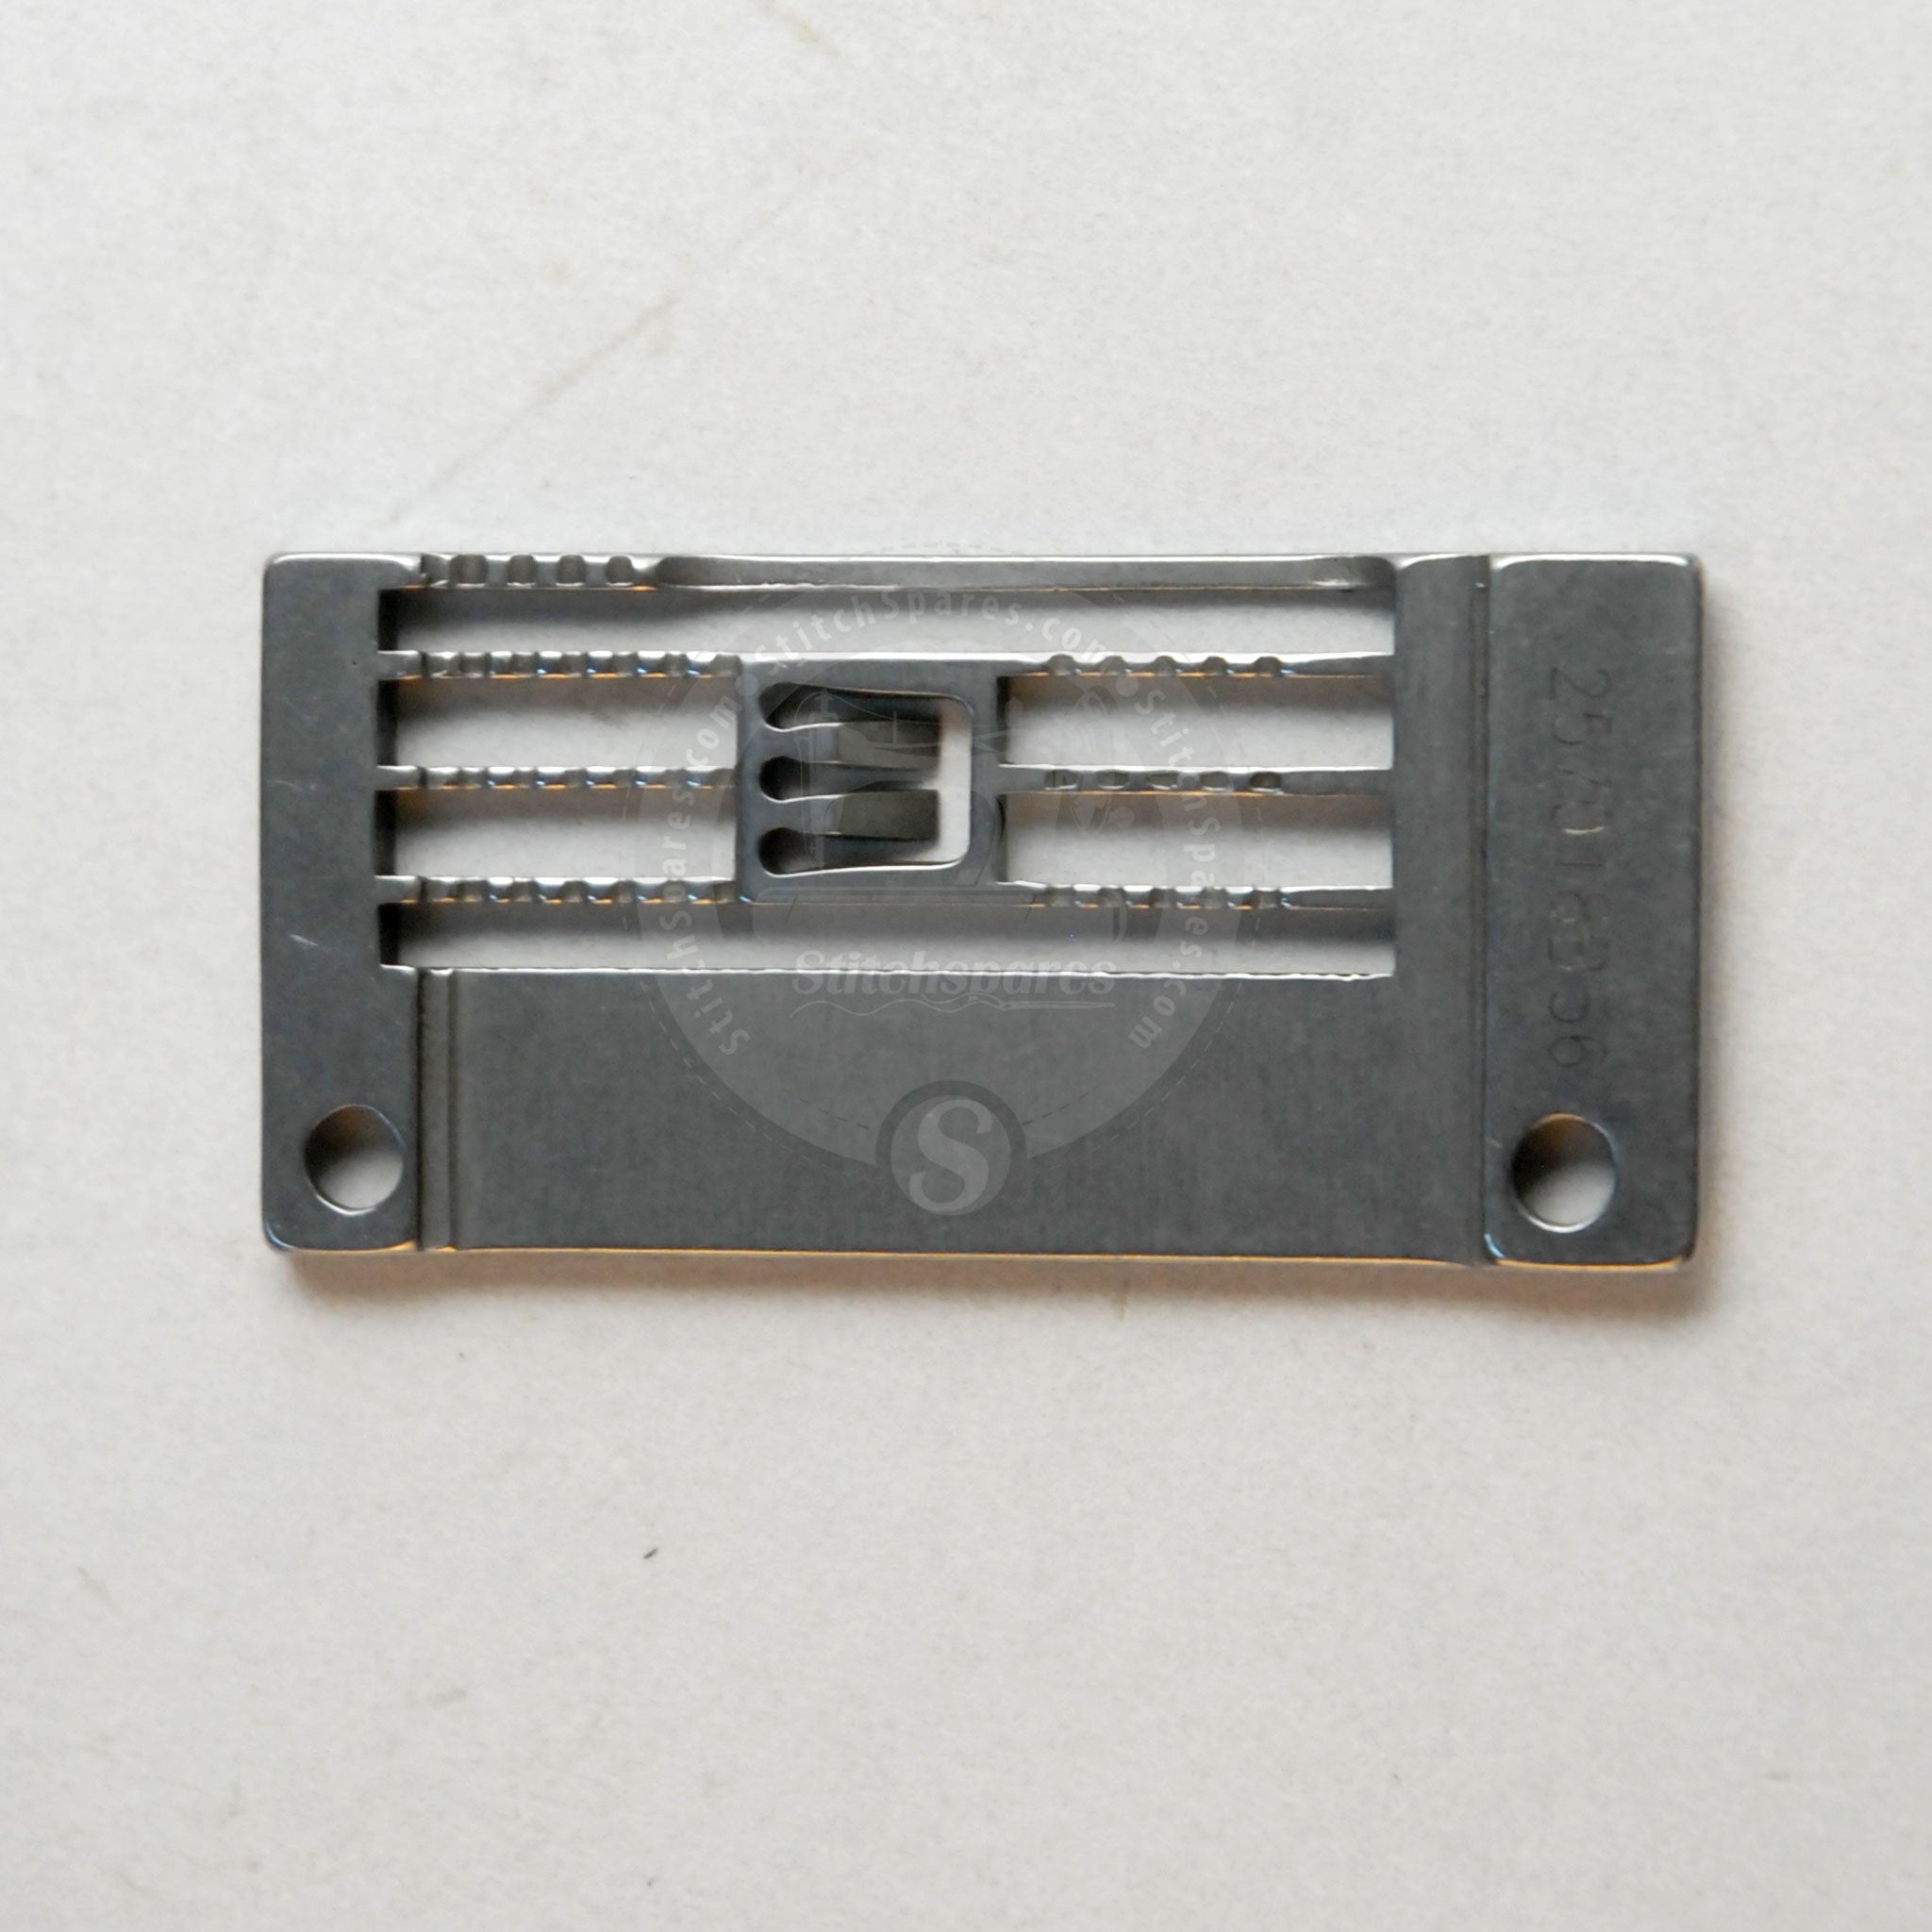 257018B56 Stichplatte für W500, W562, W1500, W1562 Pegasus Flachbett Interlock (Flatlock) Maschine